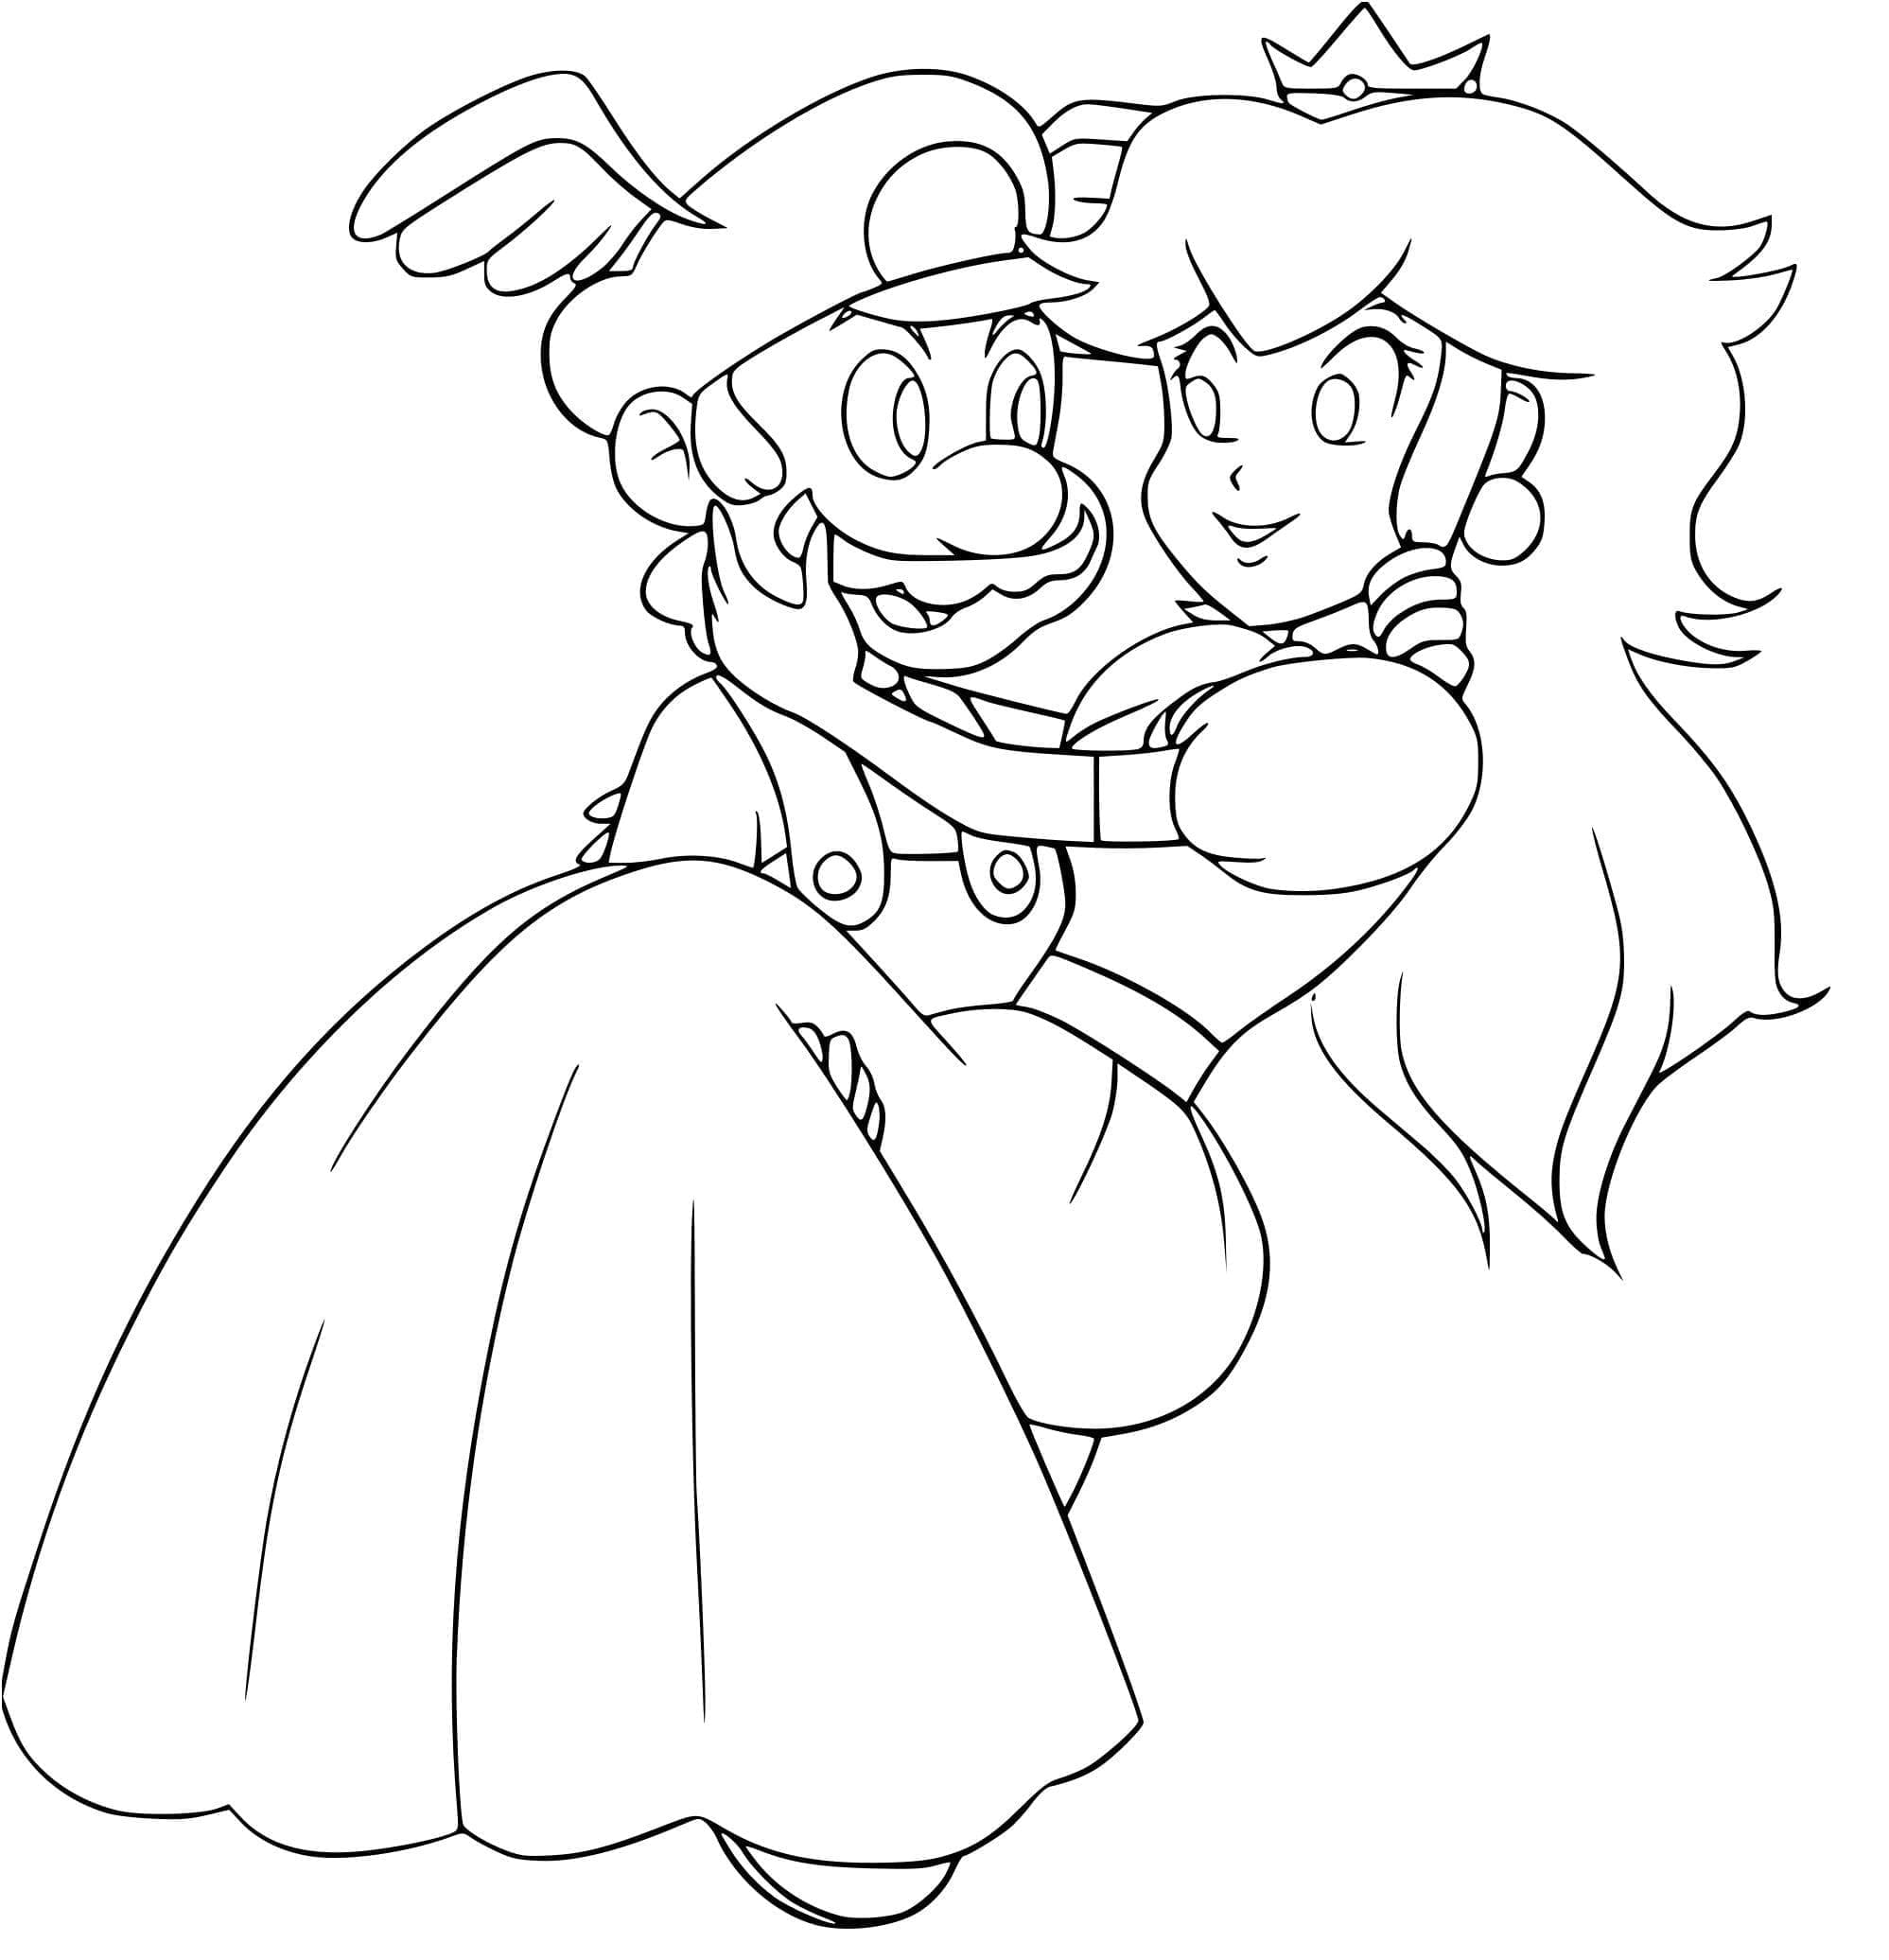 Mario et Princesse Peach coloring page